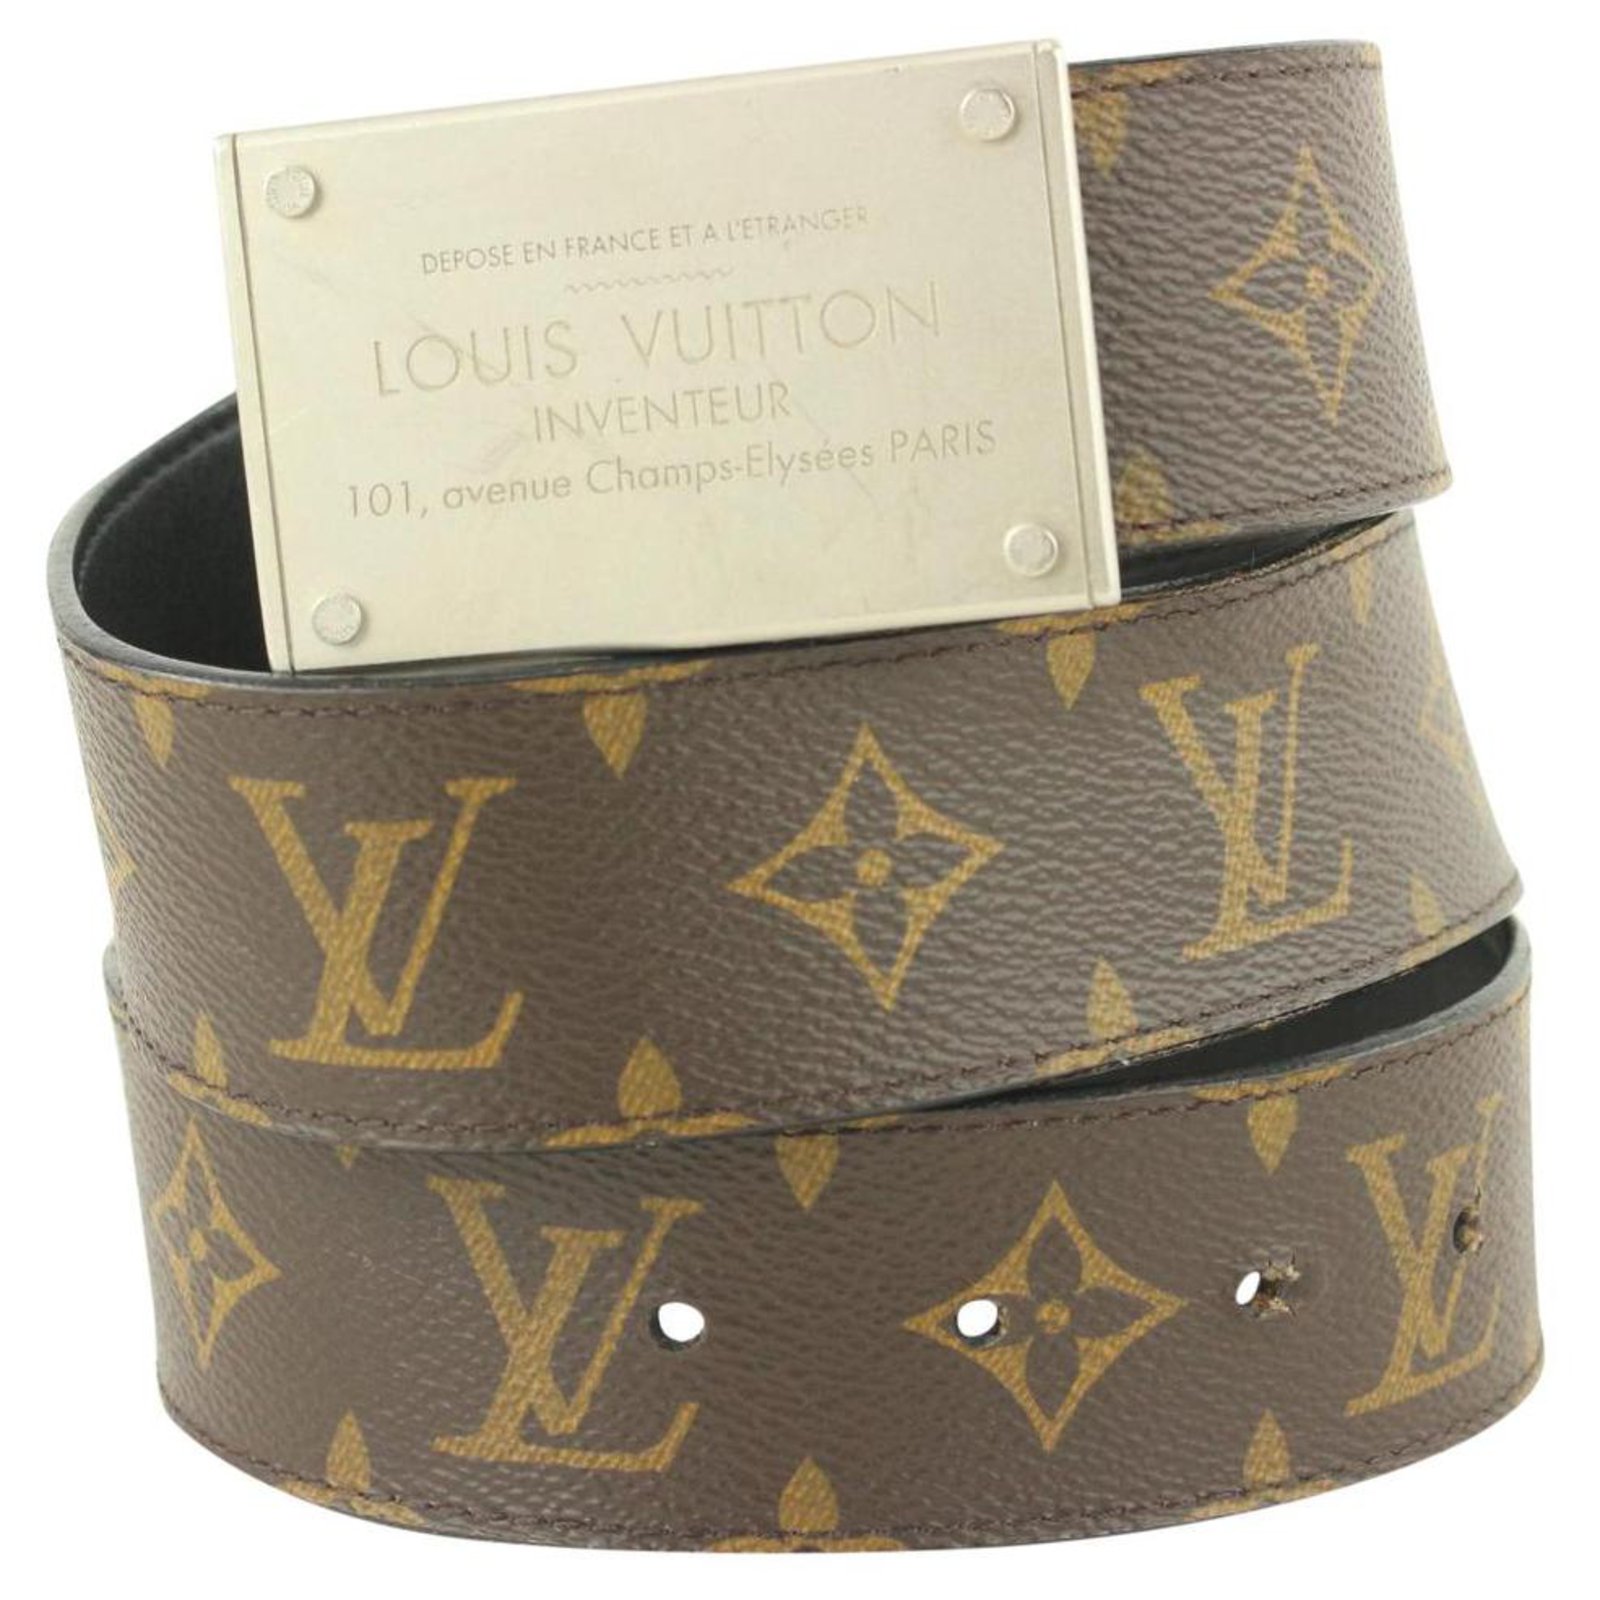 Как отличить оригинальный ремень Louis Vuitton. Луи виттон ремень оригинал